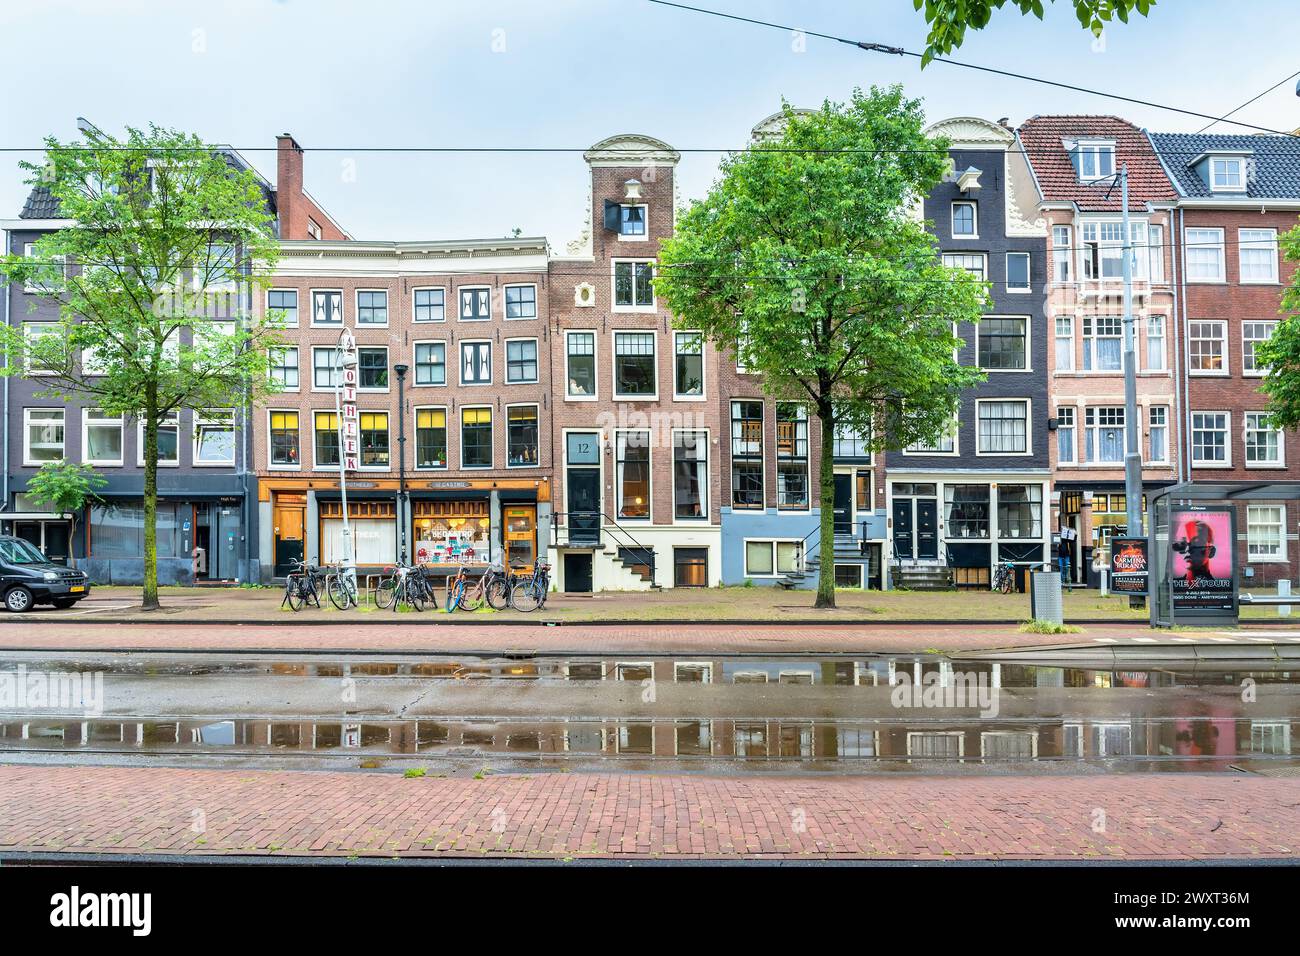 Amsterdam, pays-Bas - 12 juin 2019 : vue d'une journée avec des maisons et des habitants néerlandais typiques à Muiderstraat, Amsterdam, pays-Bas. Banque D'Images